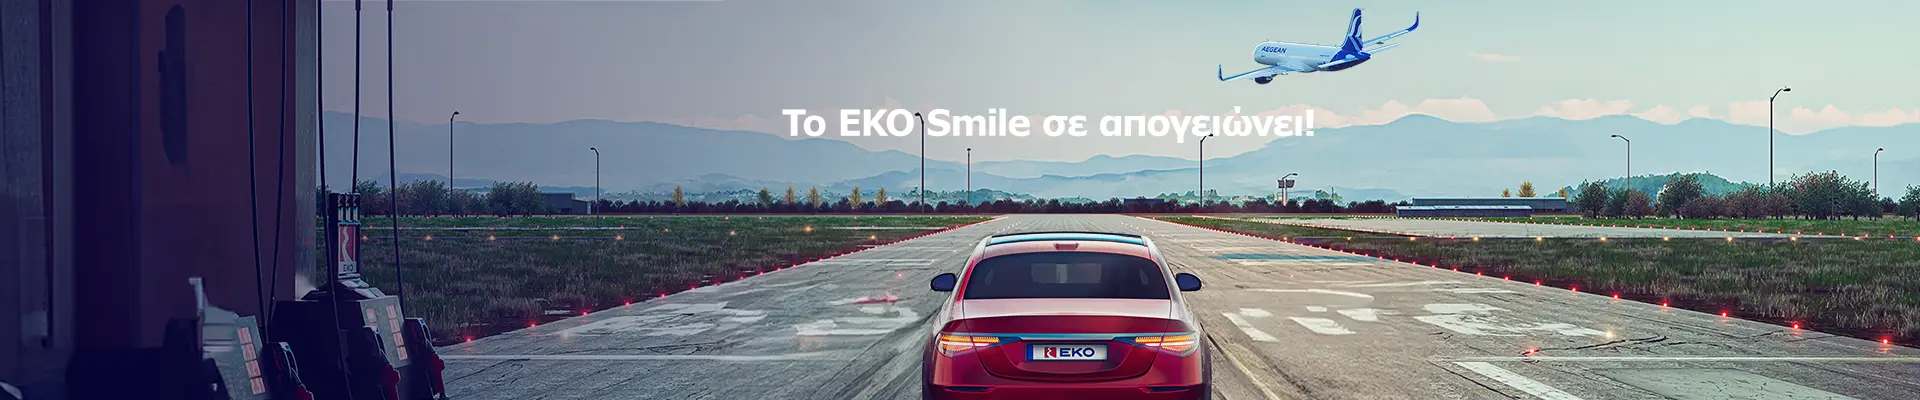 To EKO Smile σε απογειώνει!